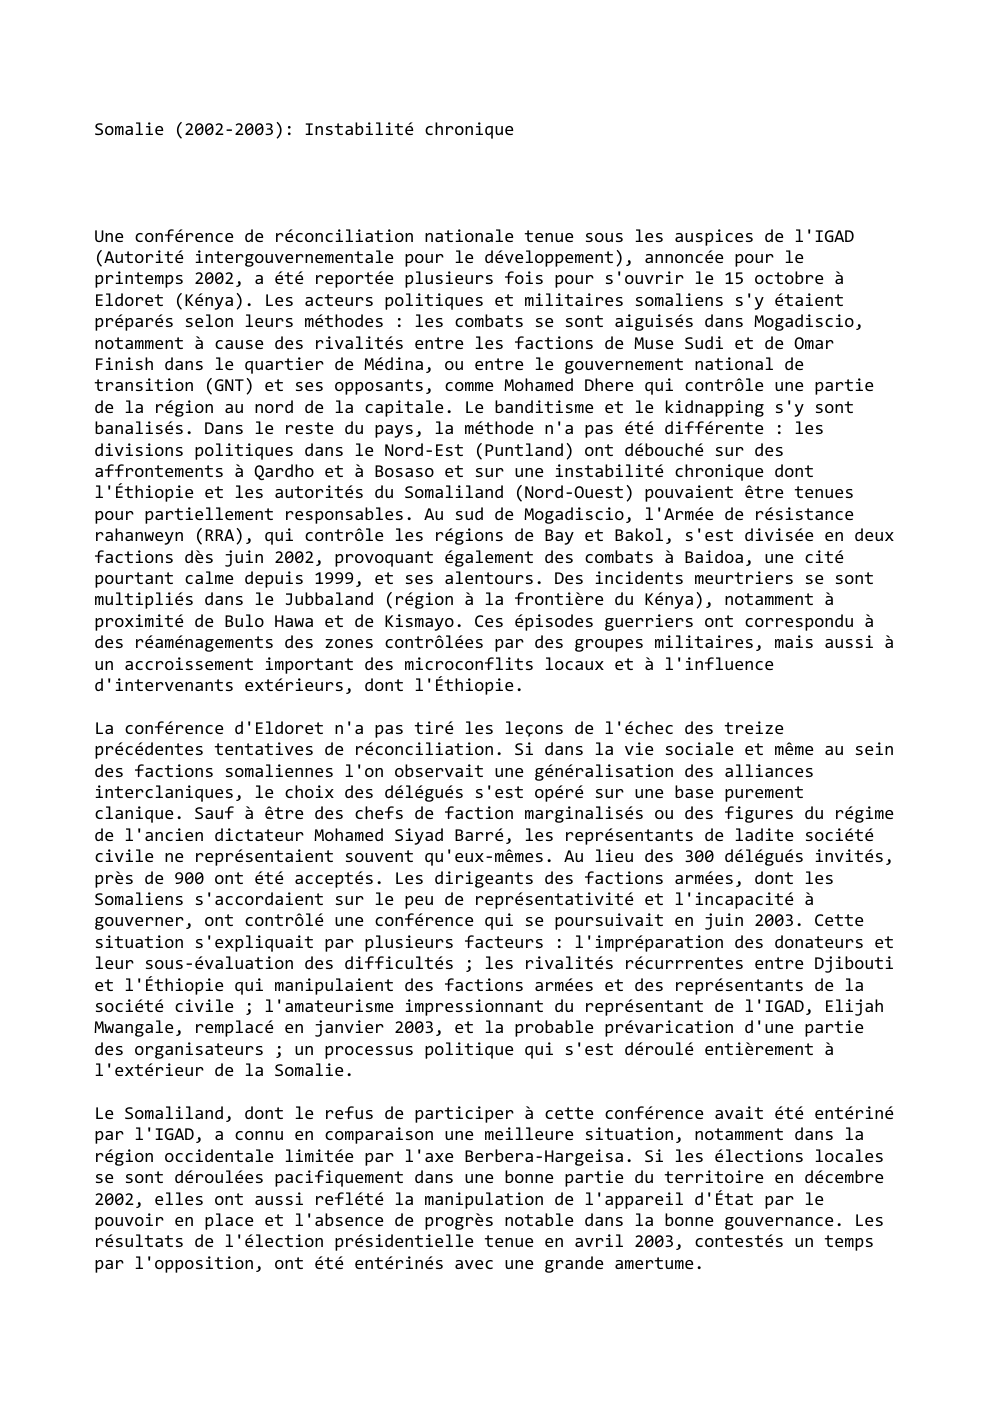 Prévisualisation du document Somalie (2002-2003): Instabilité chronique

Une conférence de réconciliation nationale tenue sous les auspices de l'IGAD
(Autorité intergouvernementale pour le développement),...